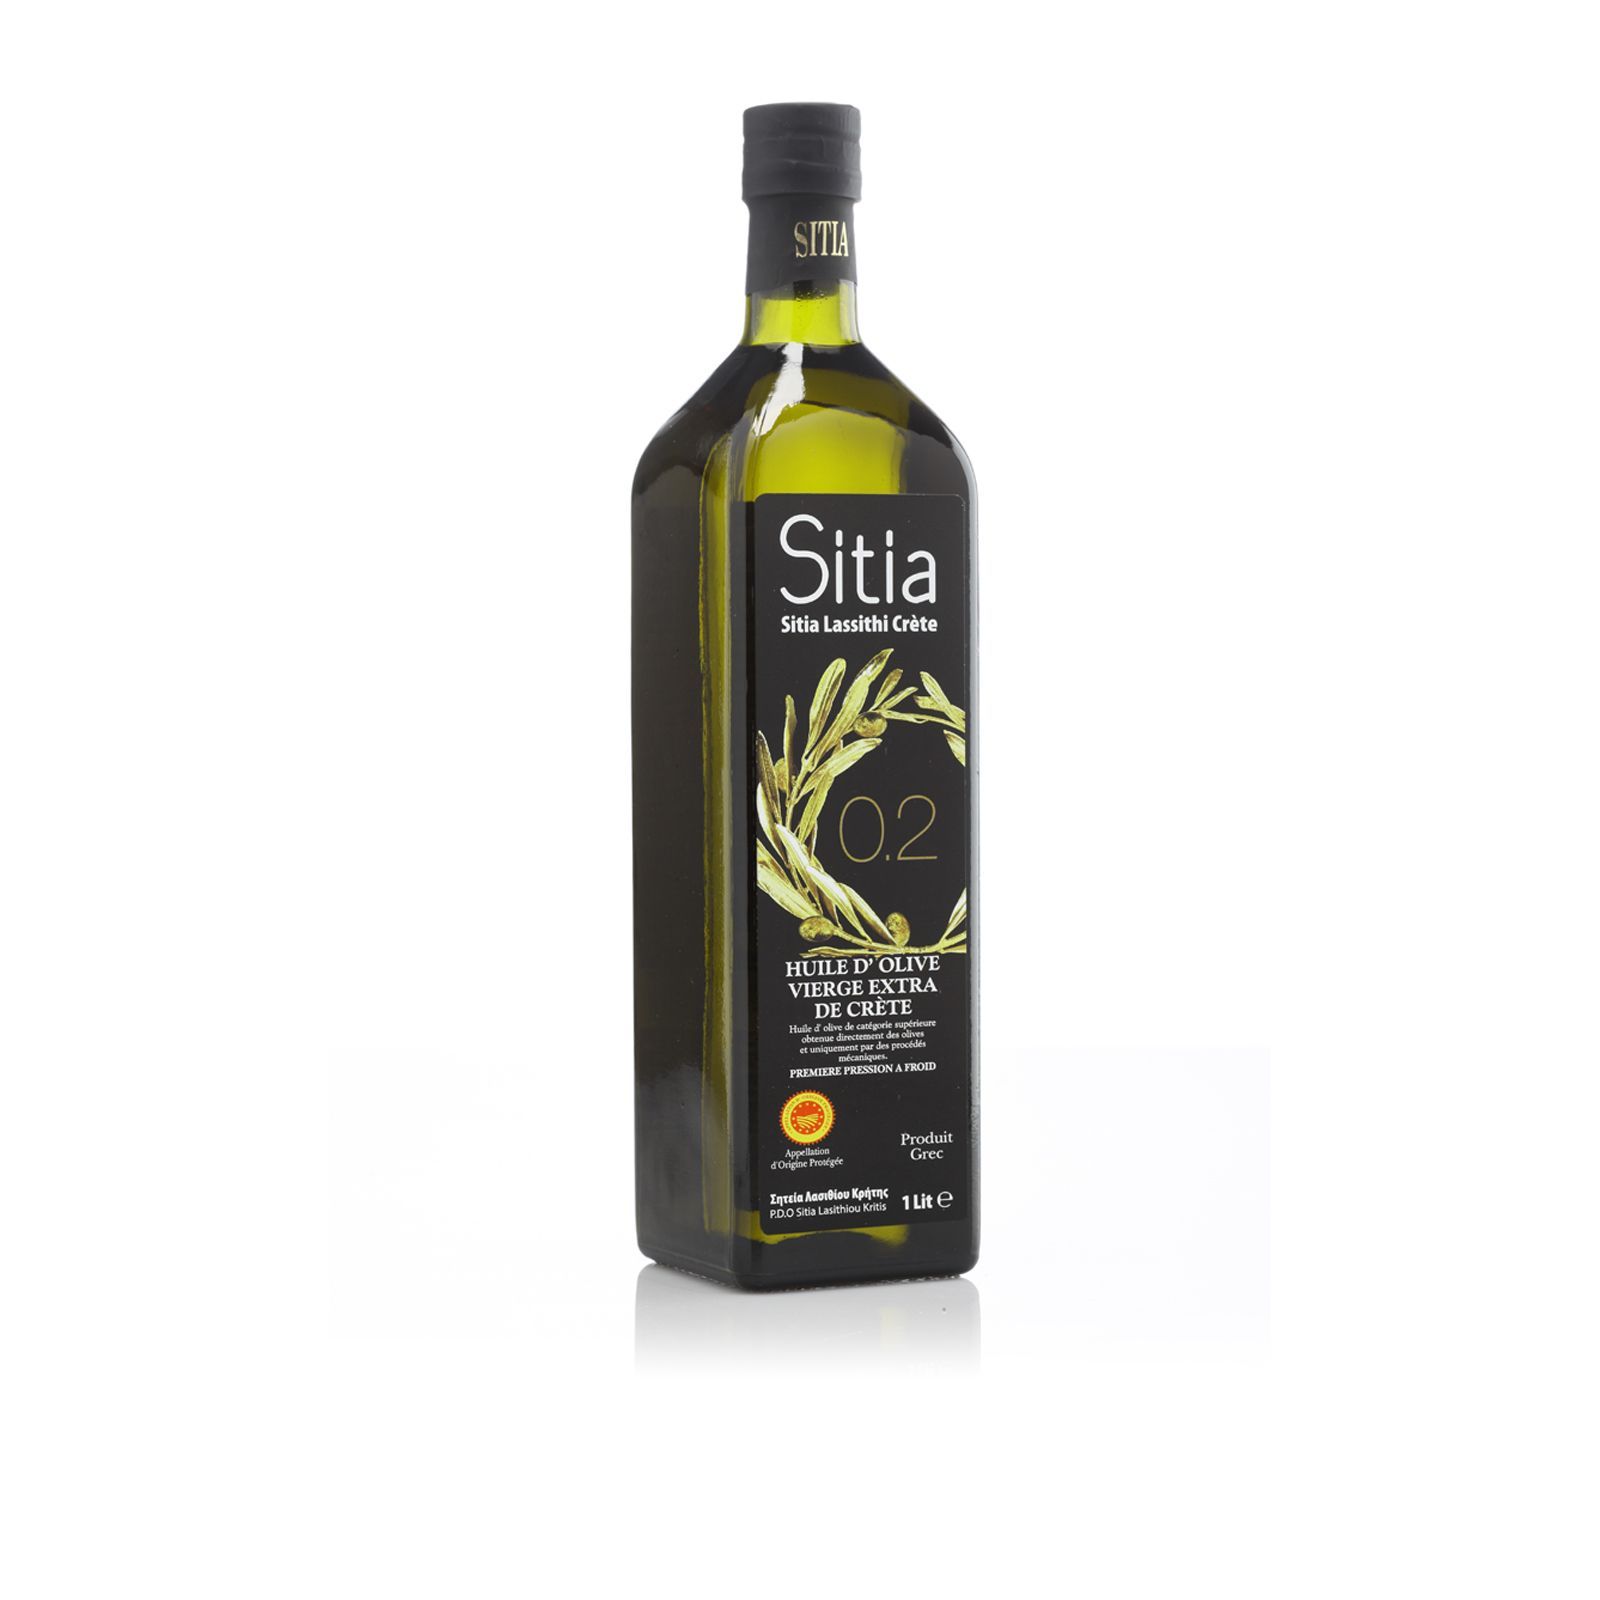 Оливковое масло высшего качества. Оливковое масло p.d.o. Sitia 02 Extra Virgin, 1л. Оливковое масло Extra Virgin 0,2% Sitia p.d.o. 0,5л. Sitia масло оливковое Extra Virgin 0,1-0,2%. Масло оливковое Sitia Extra Virgin 5л.